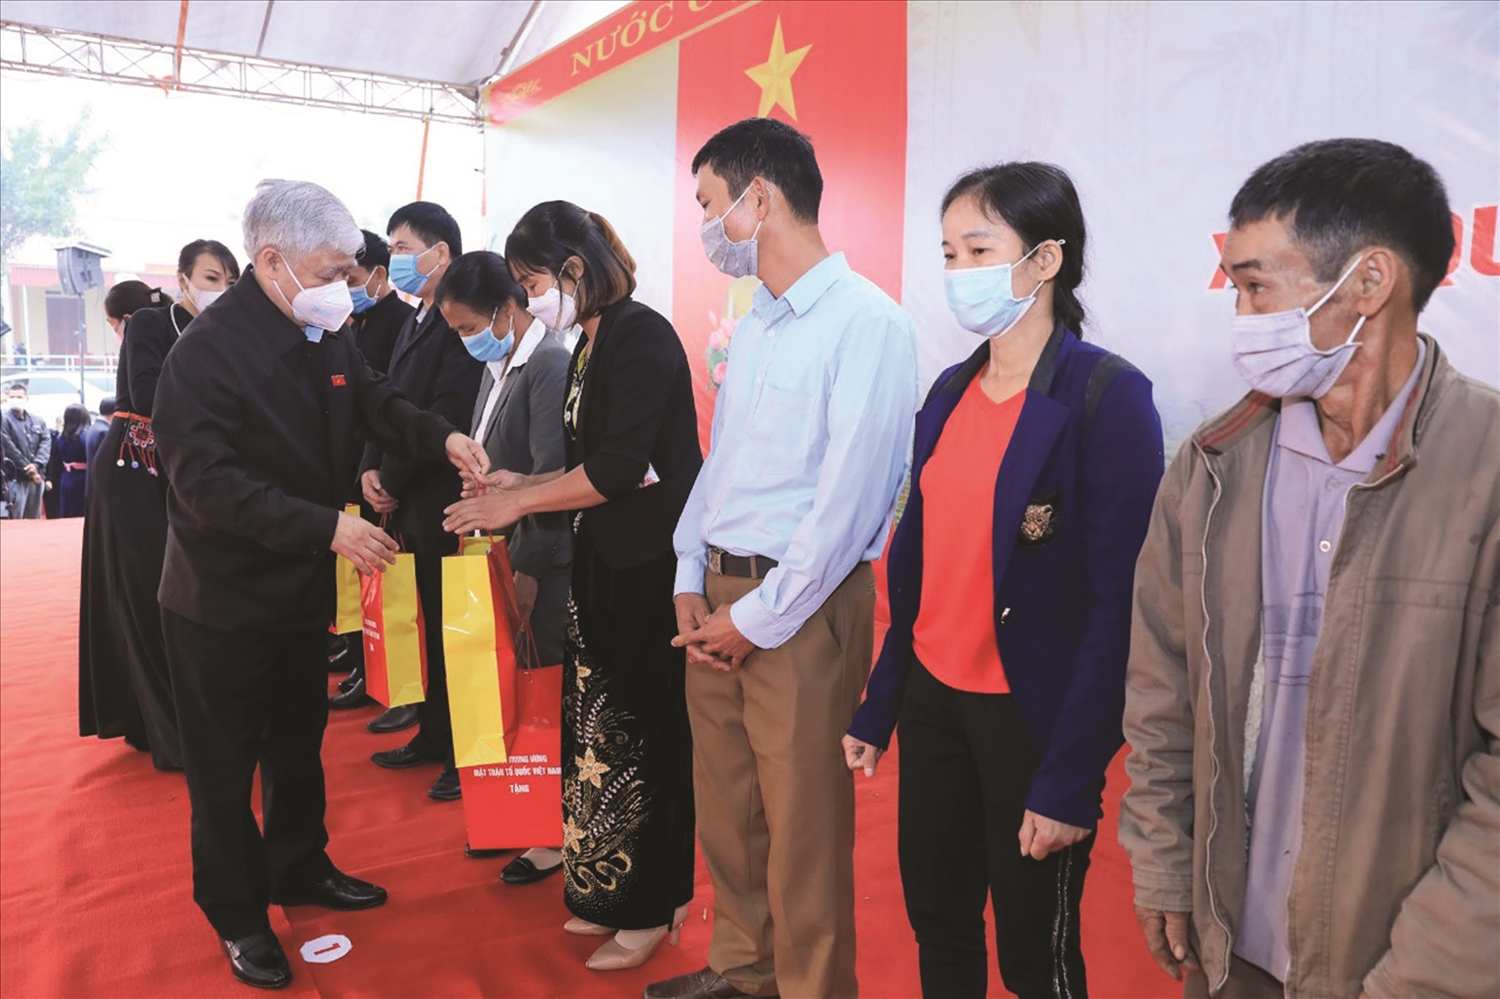 Chủ tịch Ủy ban Trung ương MTTQVN Đỗ Văn Chiến trao quà cho người dân tại xóm Quyết Tâm, xã Trung Lương, huyện Định Hoá, tỉnh Thái Nguyên nhân ngày Hội Đại đoàn kết năm 2021.